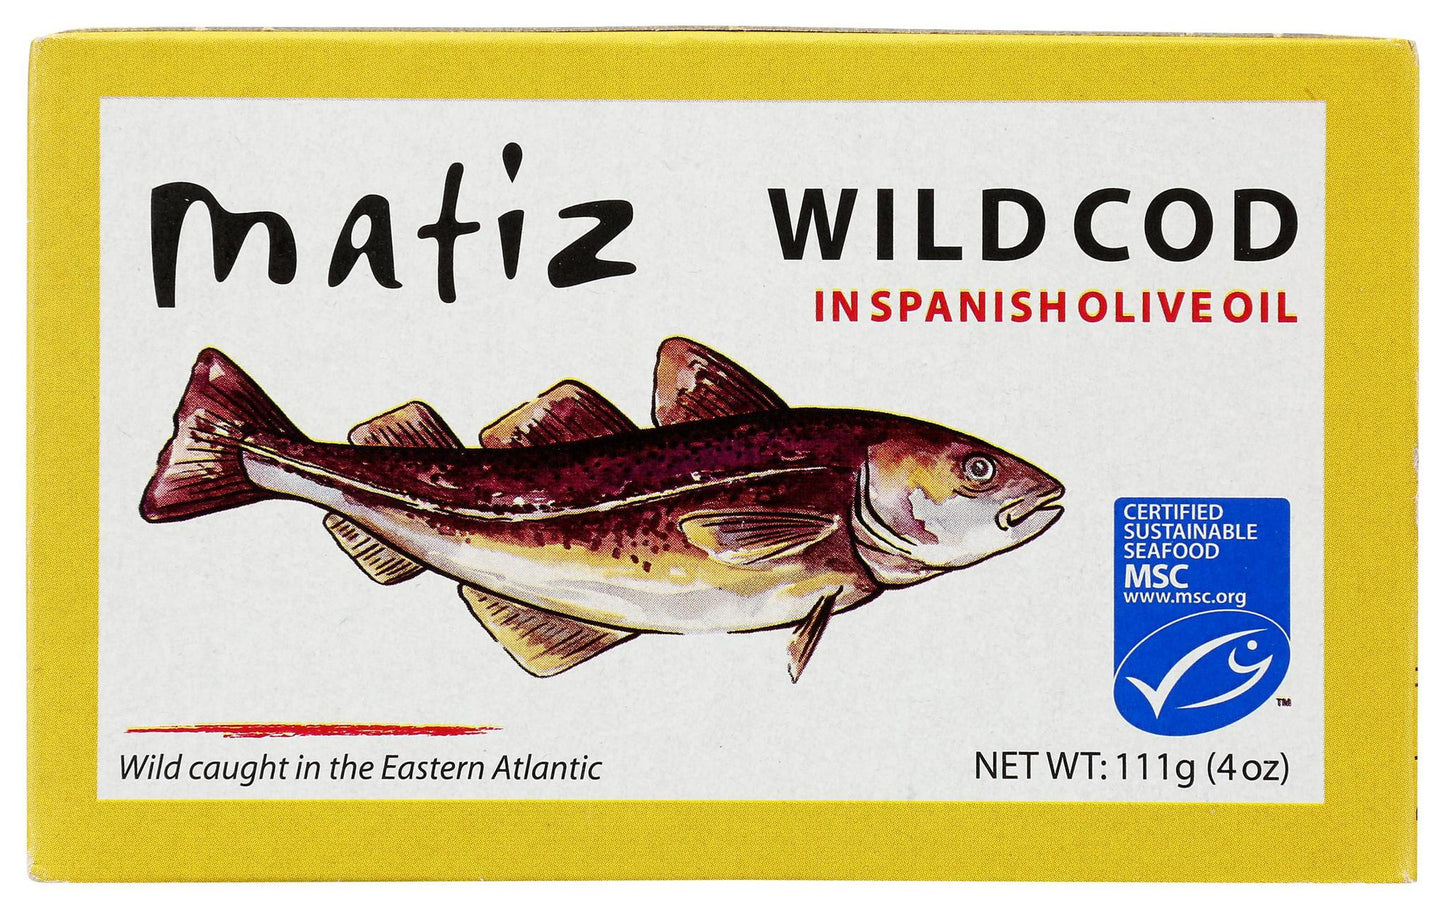 Wild Cod in Spanish Olive Oil 4oz - Matiz